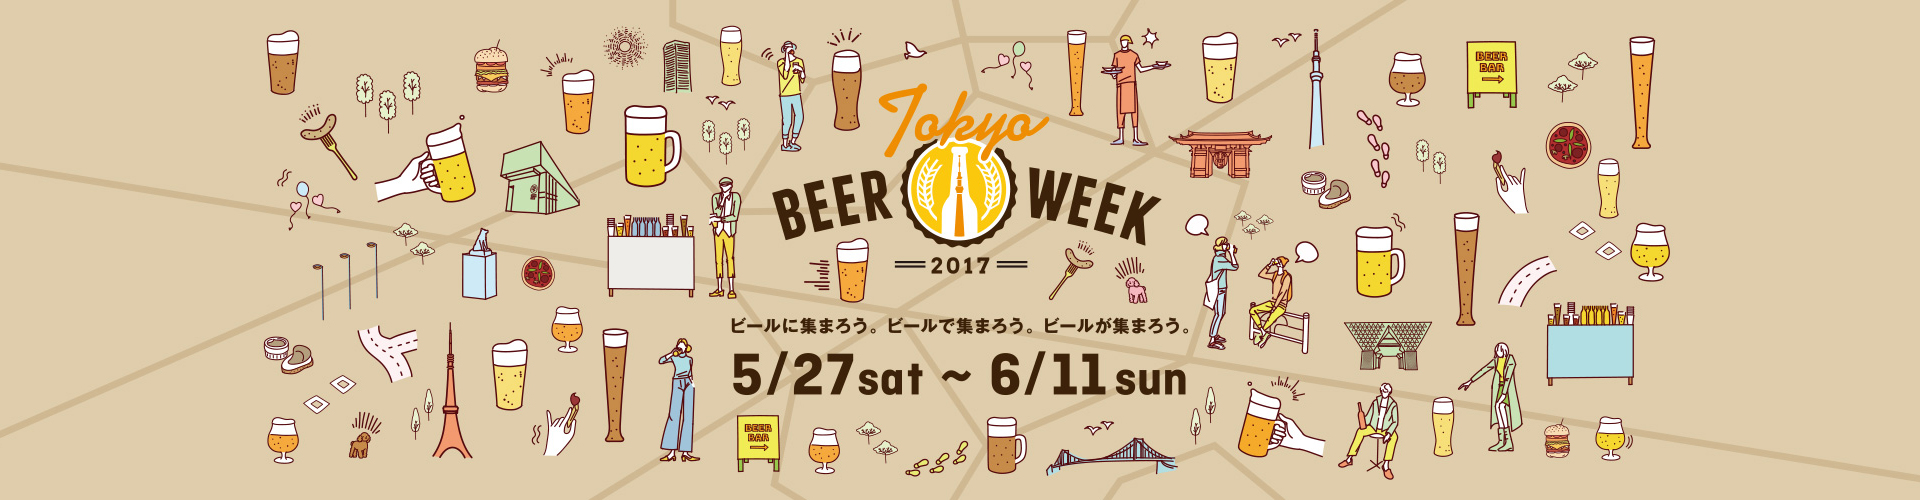 東京ビアウィーク | ビールに集まろう。ビールで集まろう。ビールが集まろう。 5/27 sat ~ 6/11 sun